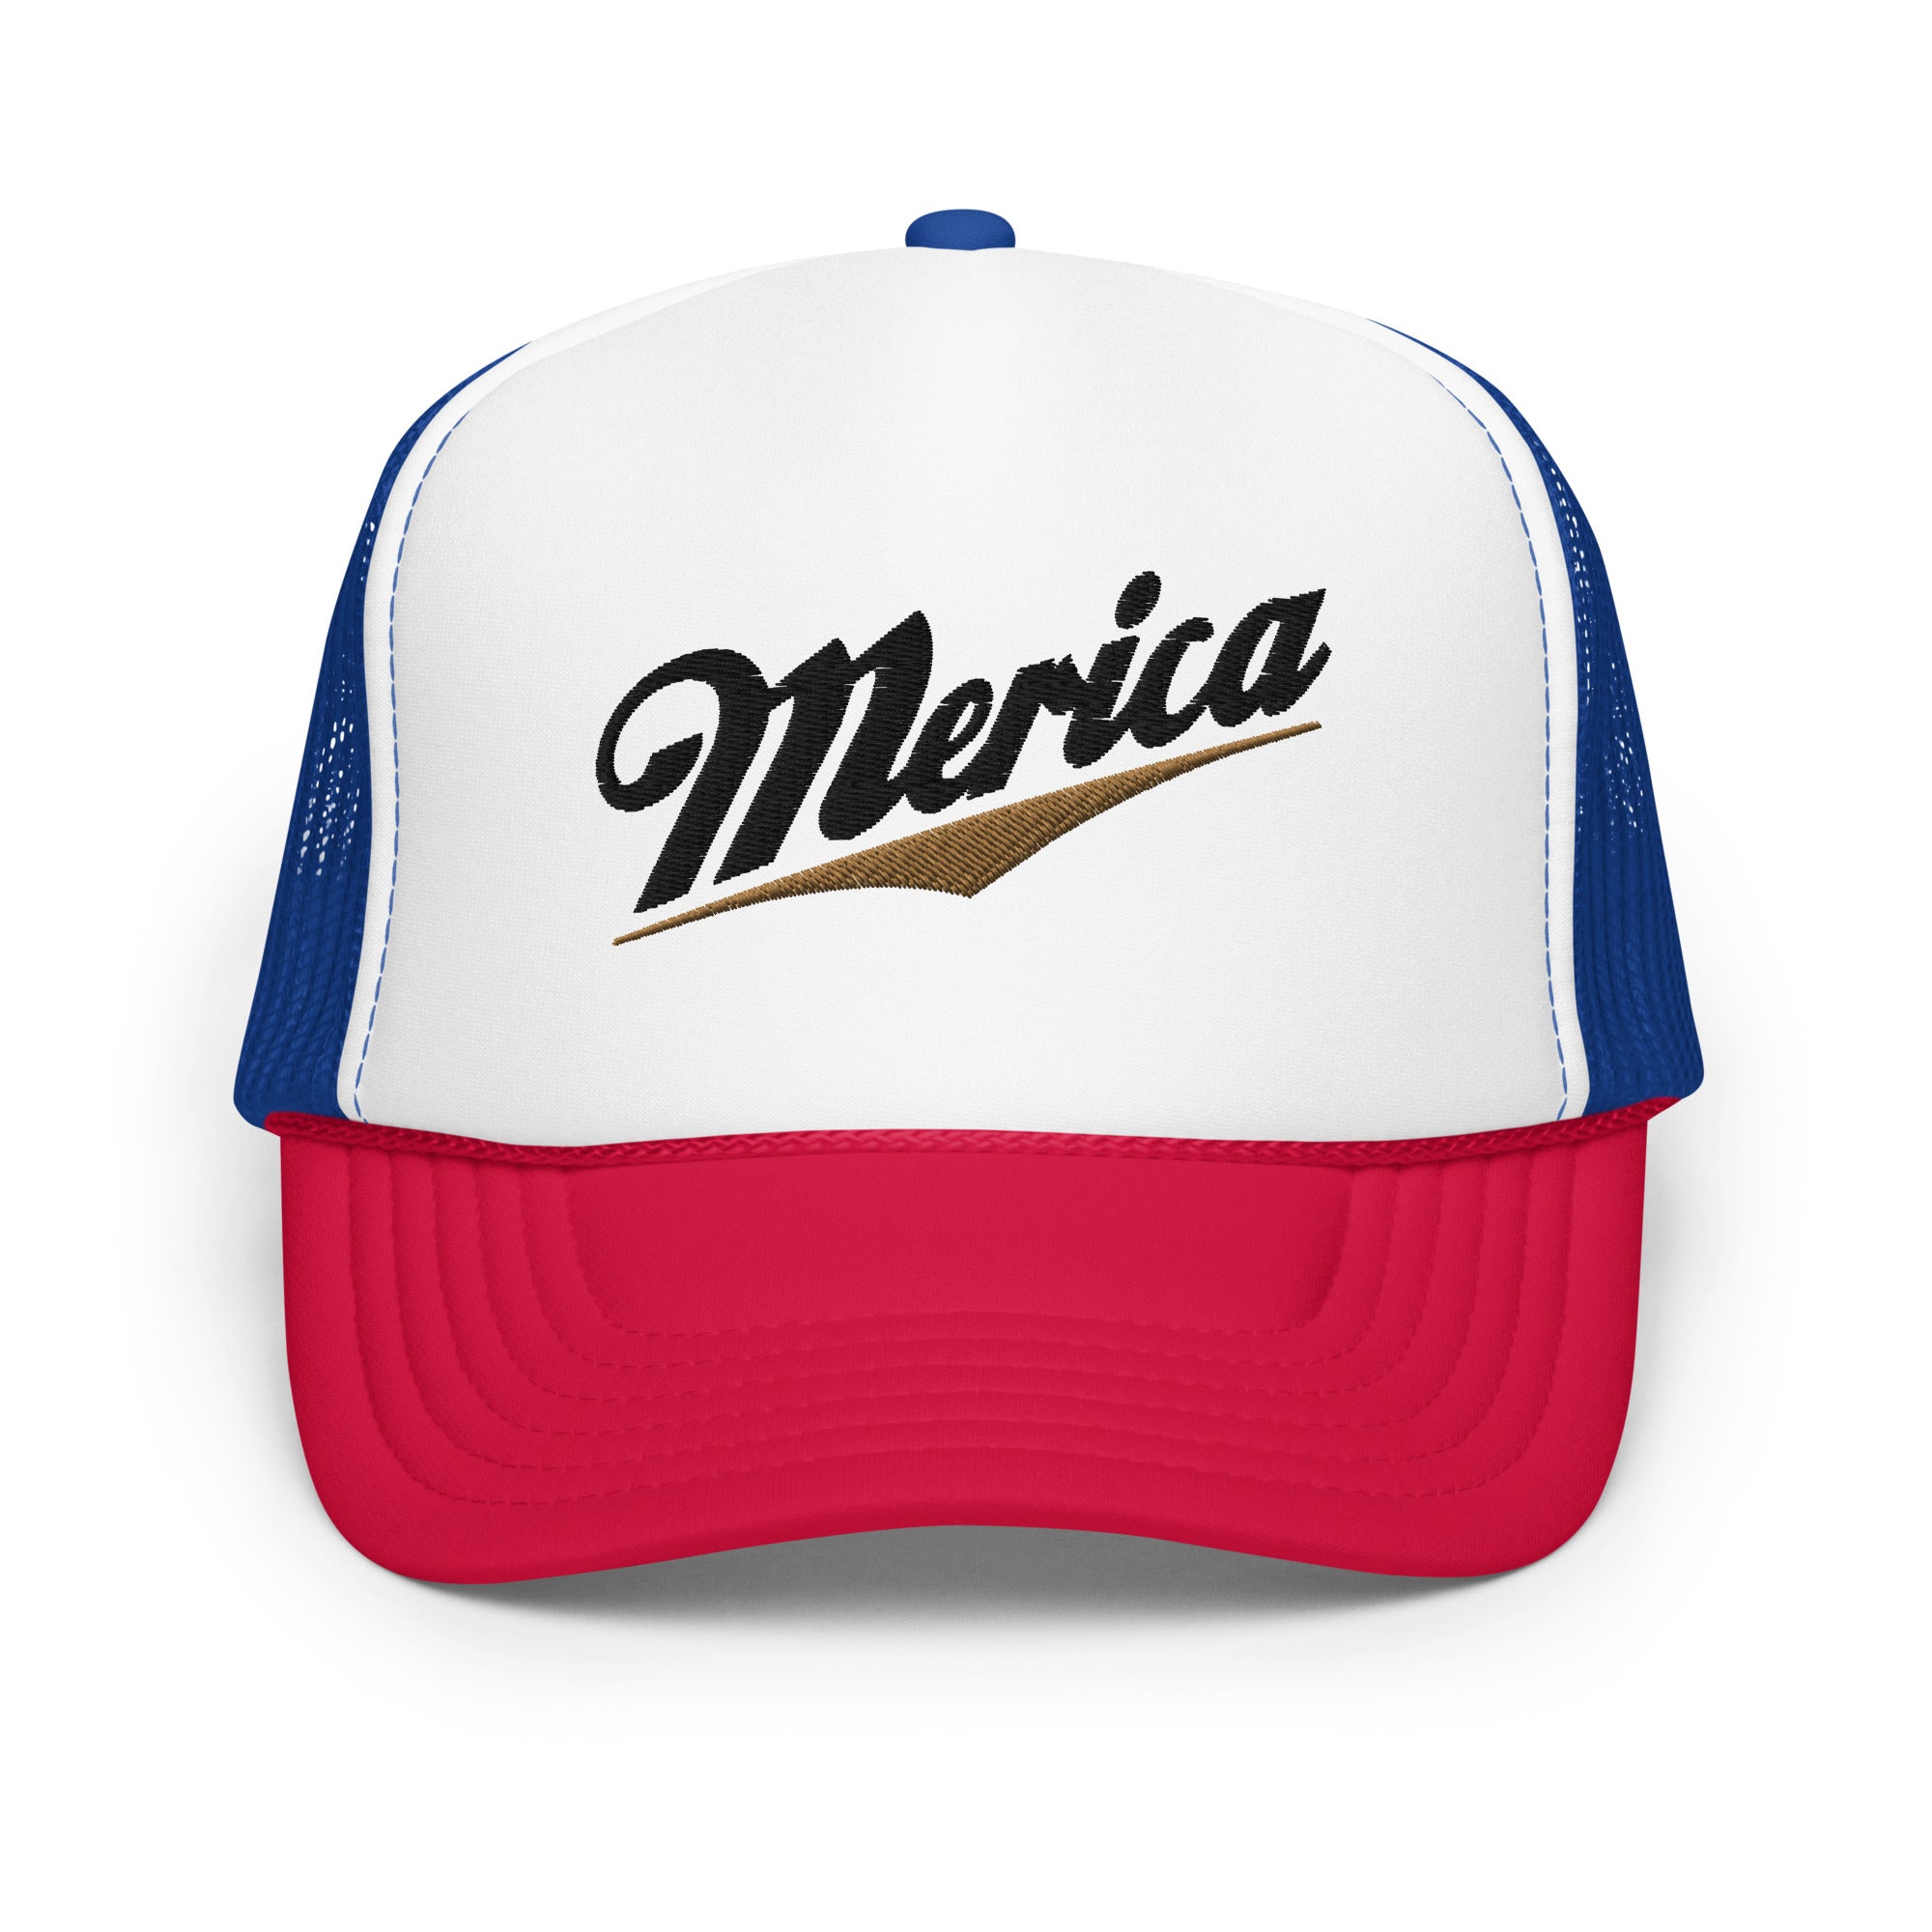 Merica Foam Trucker Hat